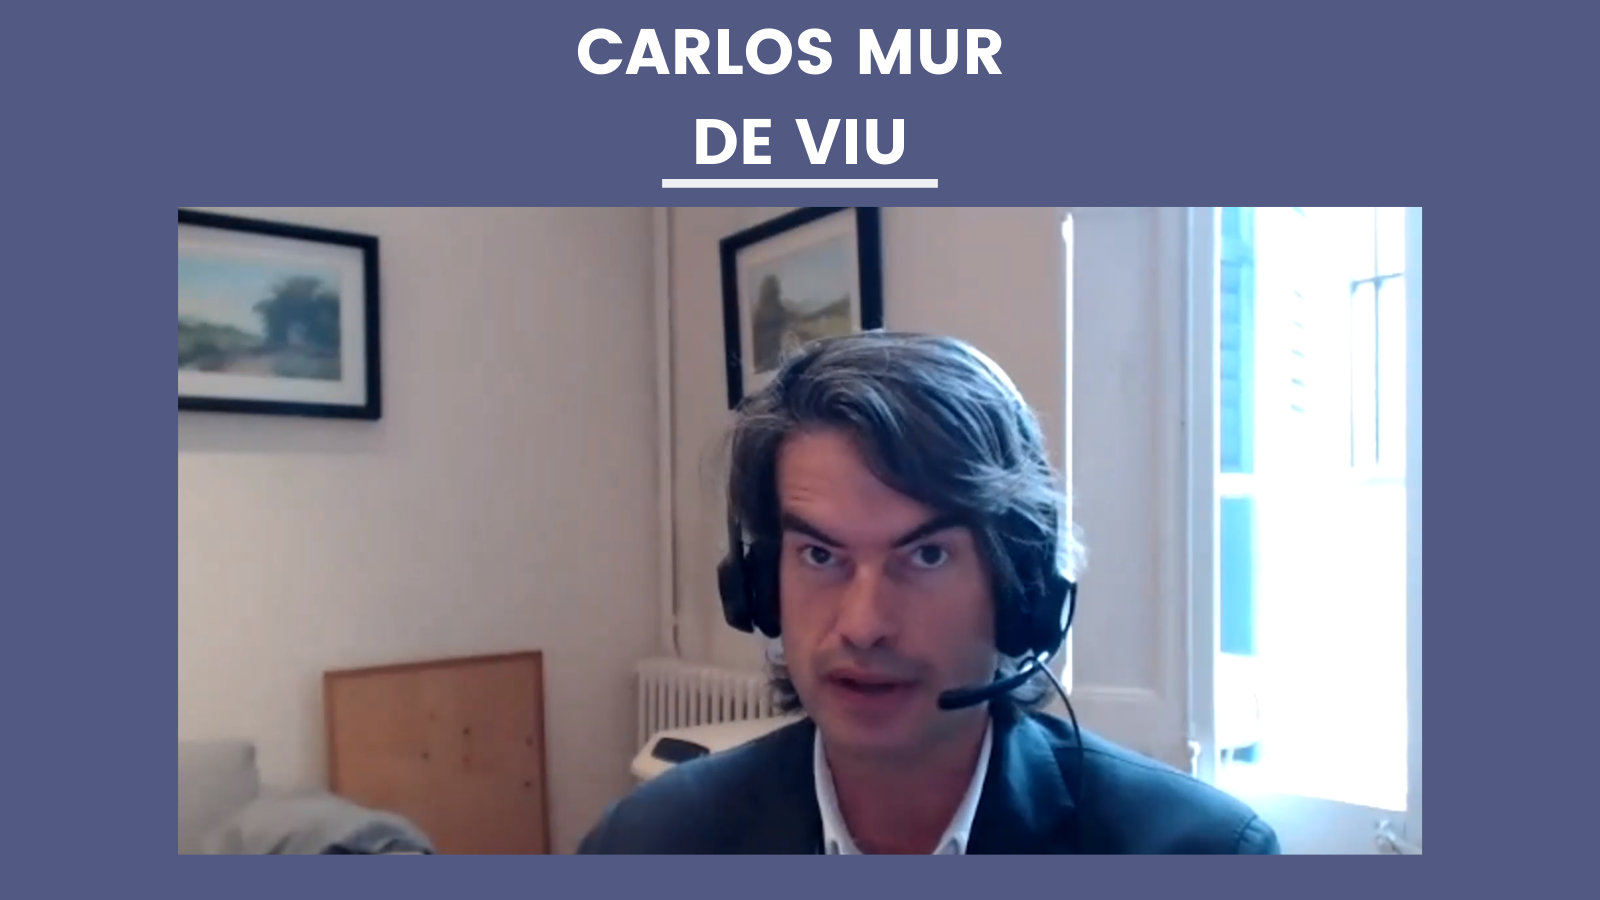 Conclusión sobre la ponencia del Dr. Carlos Mur de Viu